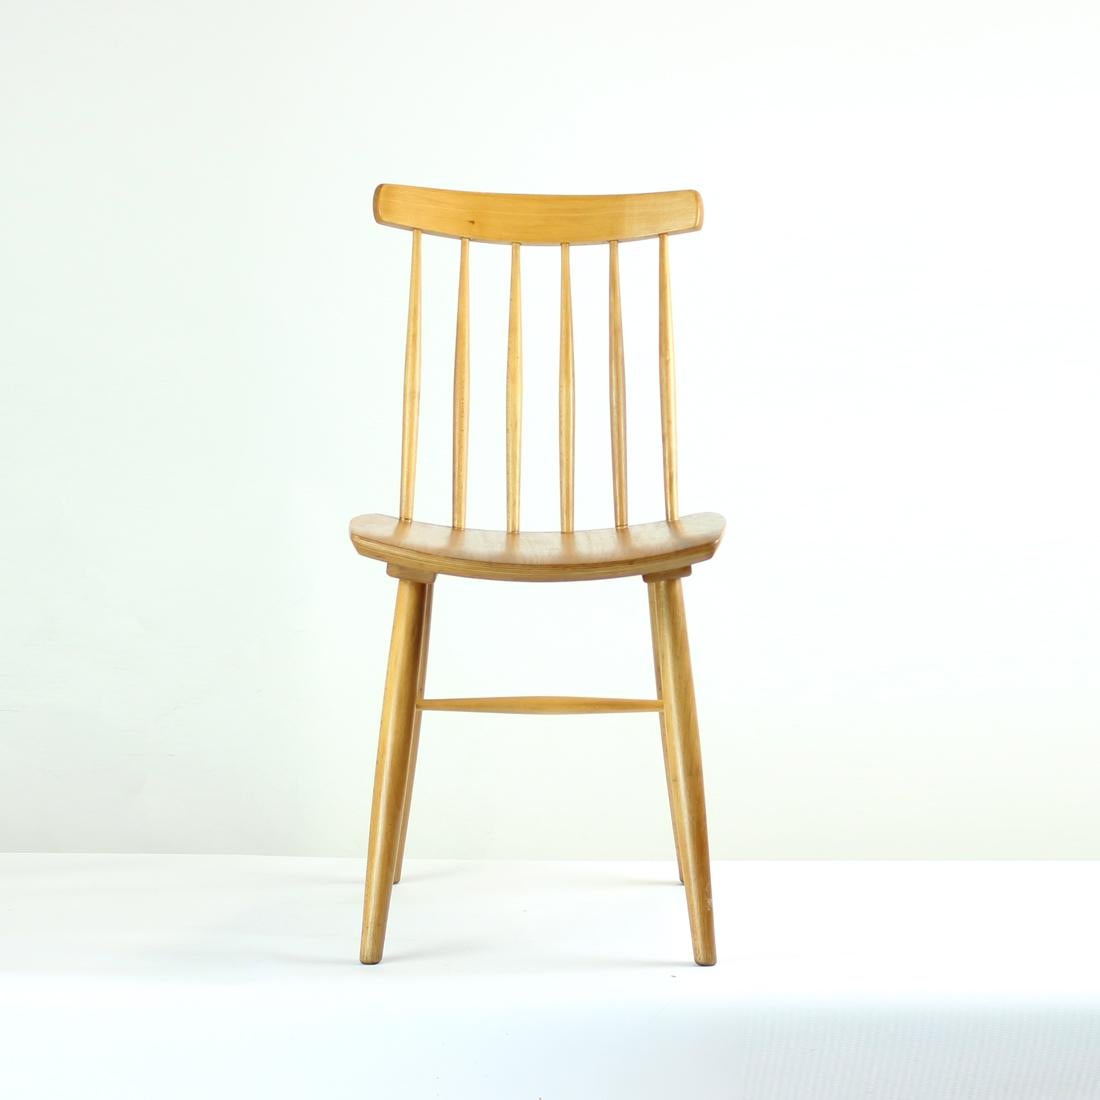 Belle chaise de salle à manger vintage fabriquée en bois de chêne. Le Label indique que la chaise a été produite en 1975. Très beaux détails et caractéristiques de design sur la chaise. Boiseries élégantes. Belle teinture naturelle pour le bois de